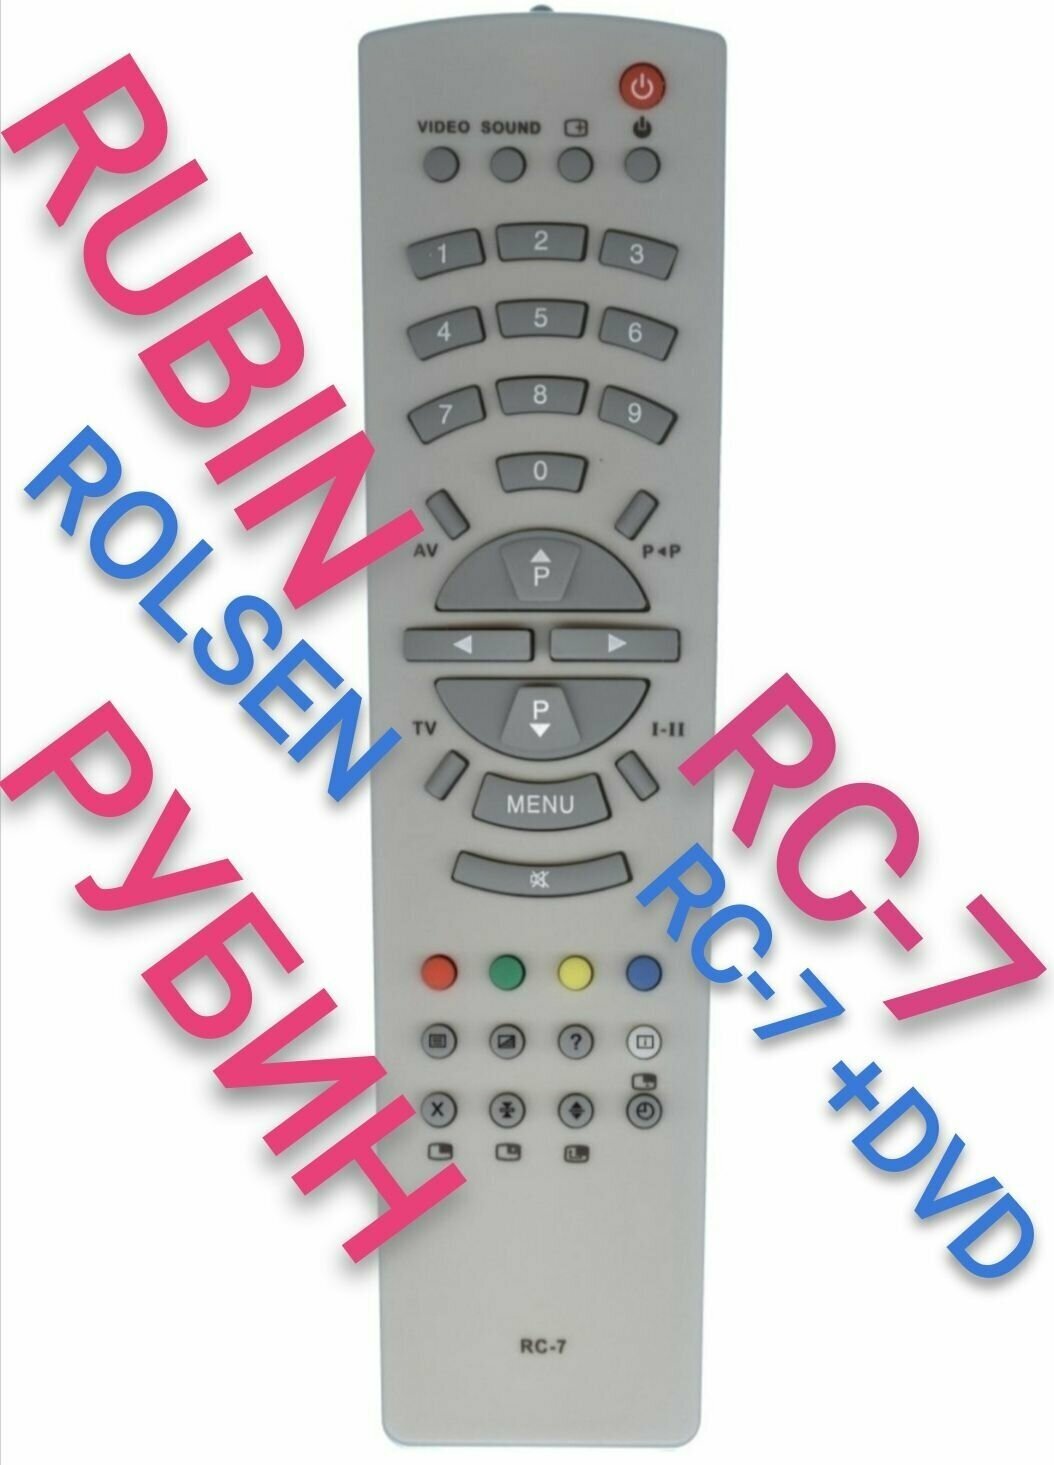 Пульт RC-7 для ROLSEN и RUBIN rc-7+DVD телевизора